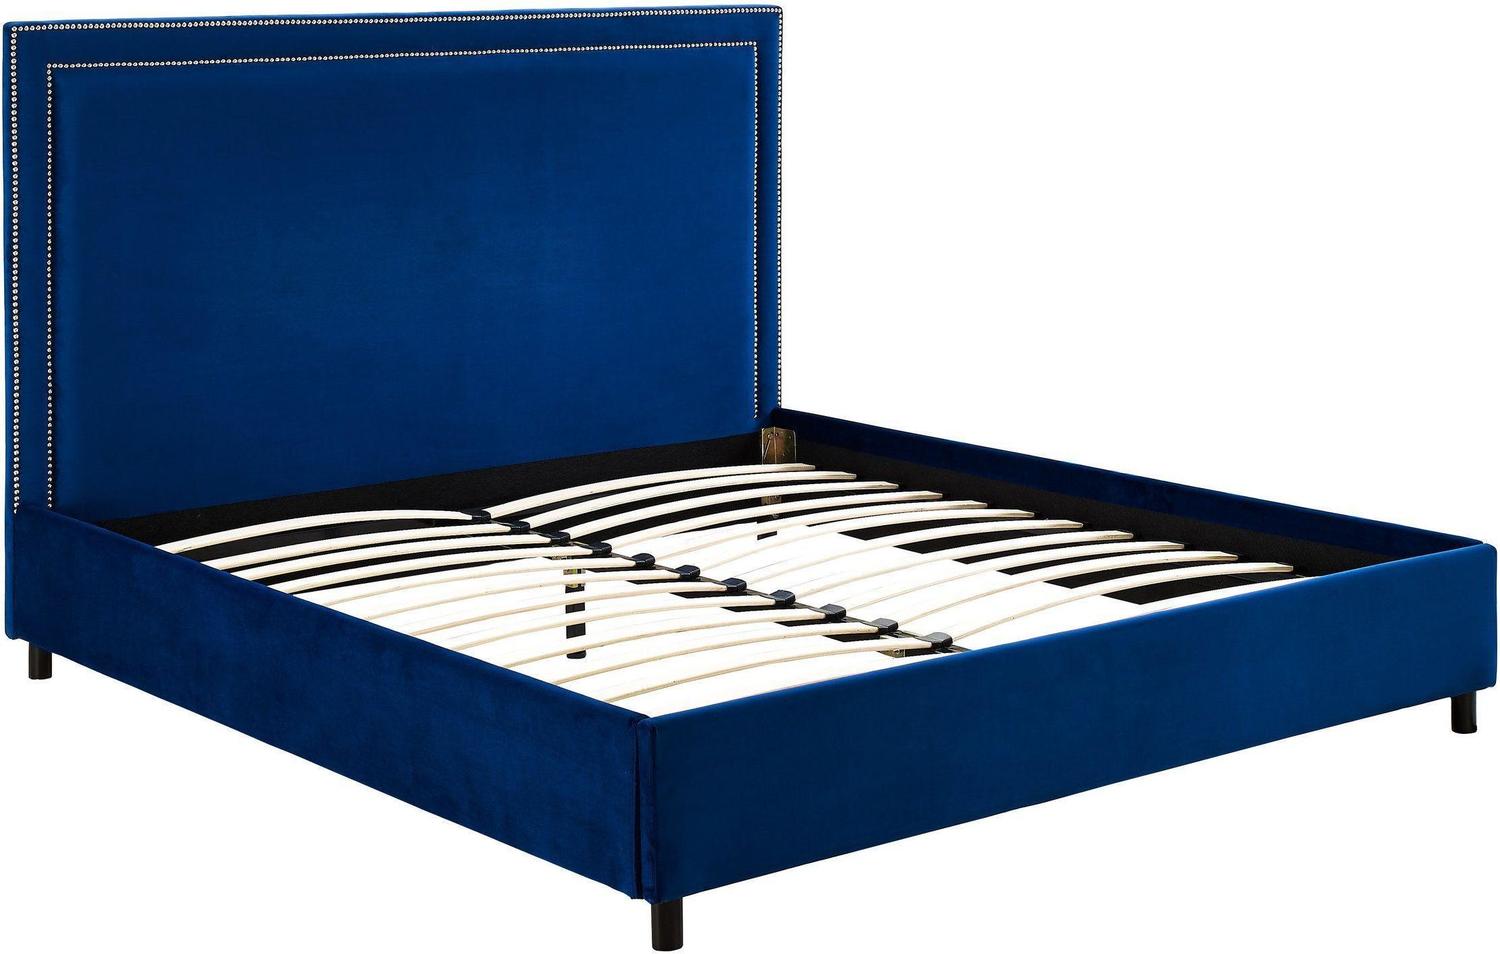 black metal platform bed frame queen Contemporary Design Furniture Beds Navy